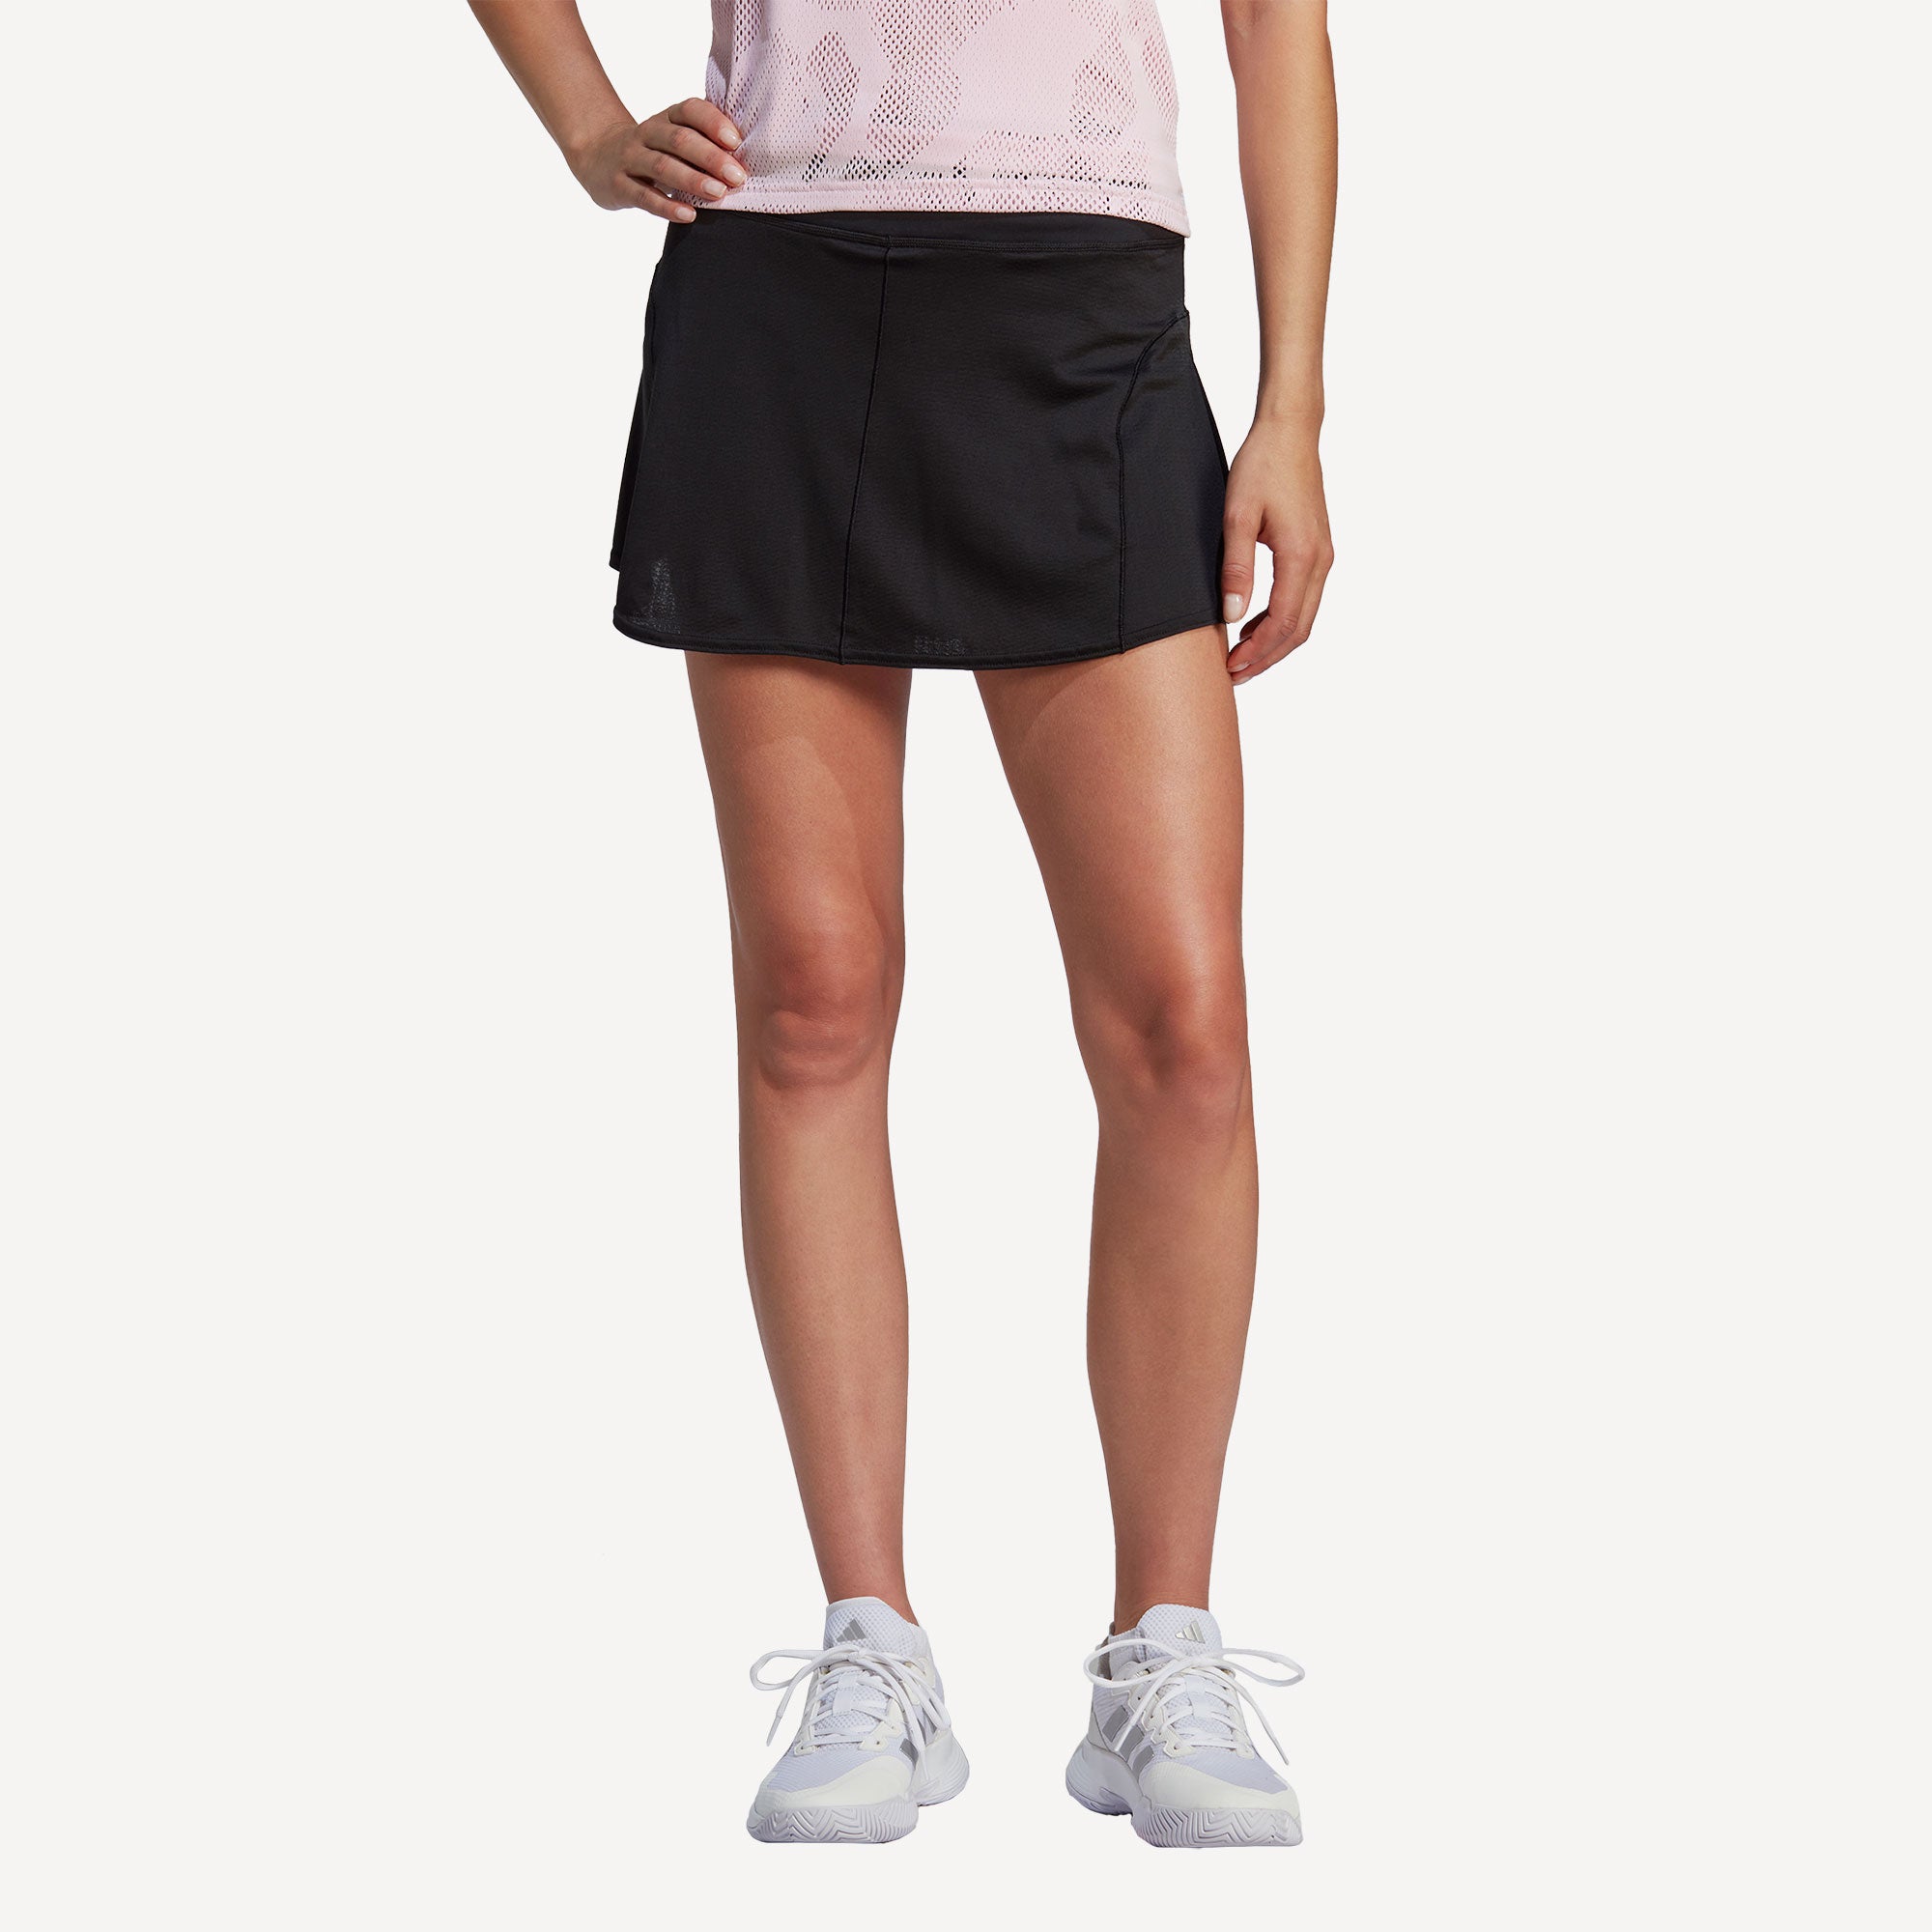 adidas GameSet Match Women's Tennis Skirt - Black (1)